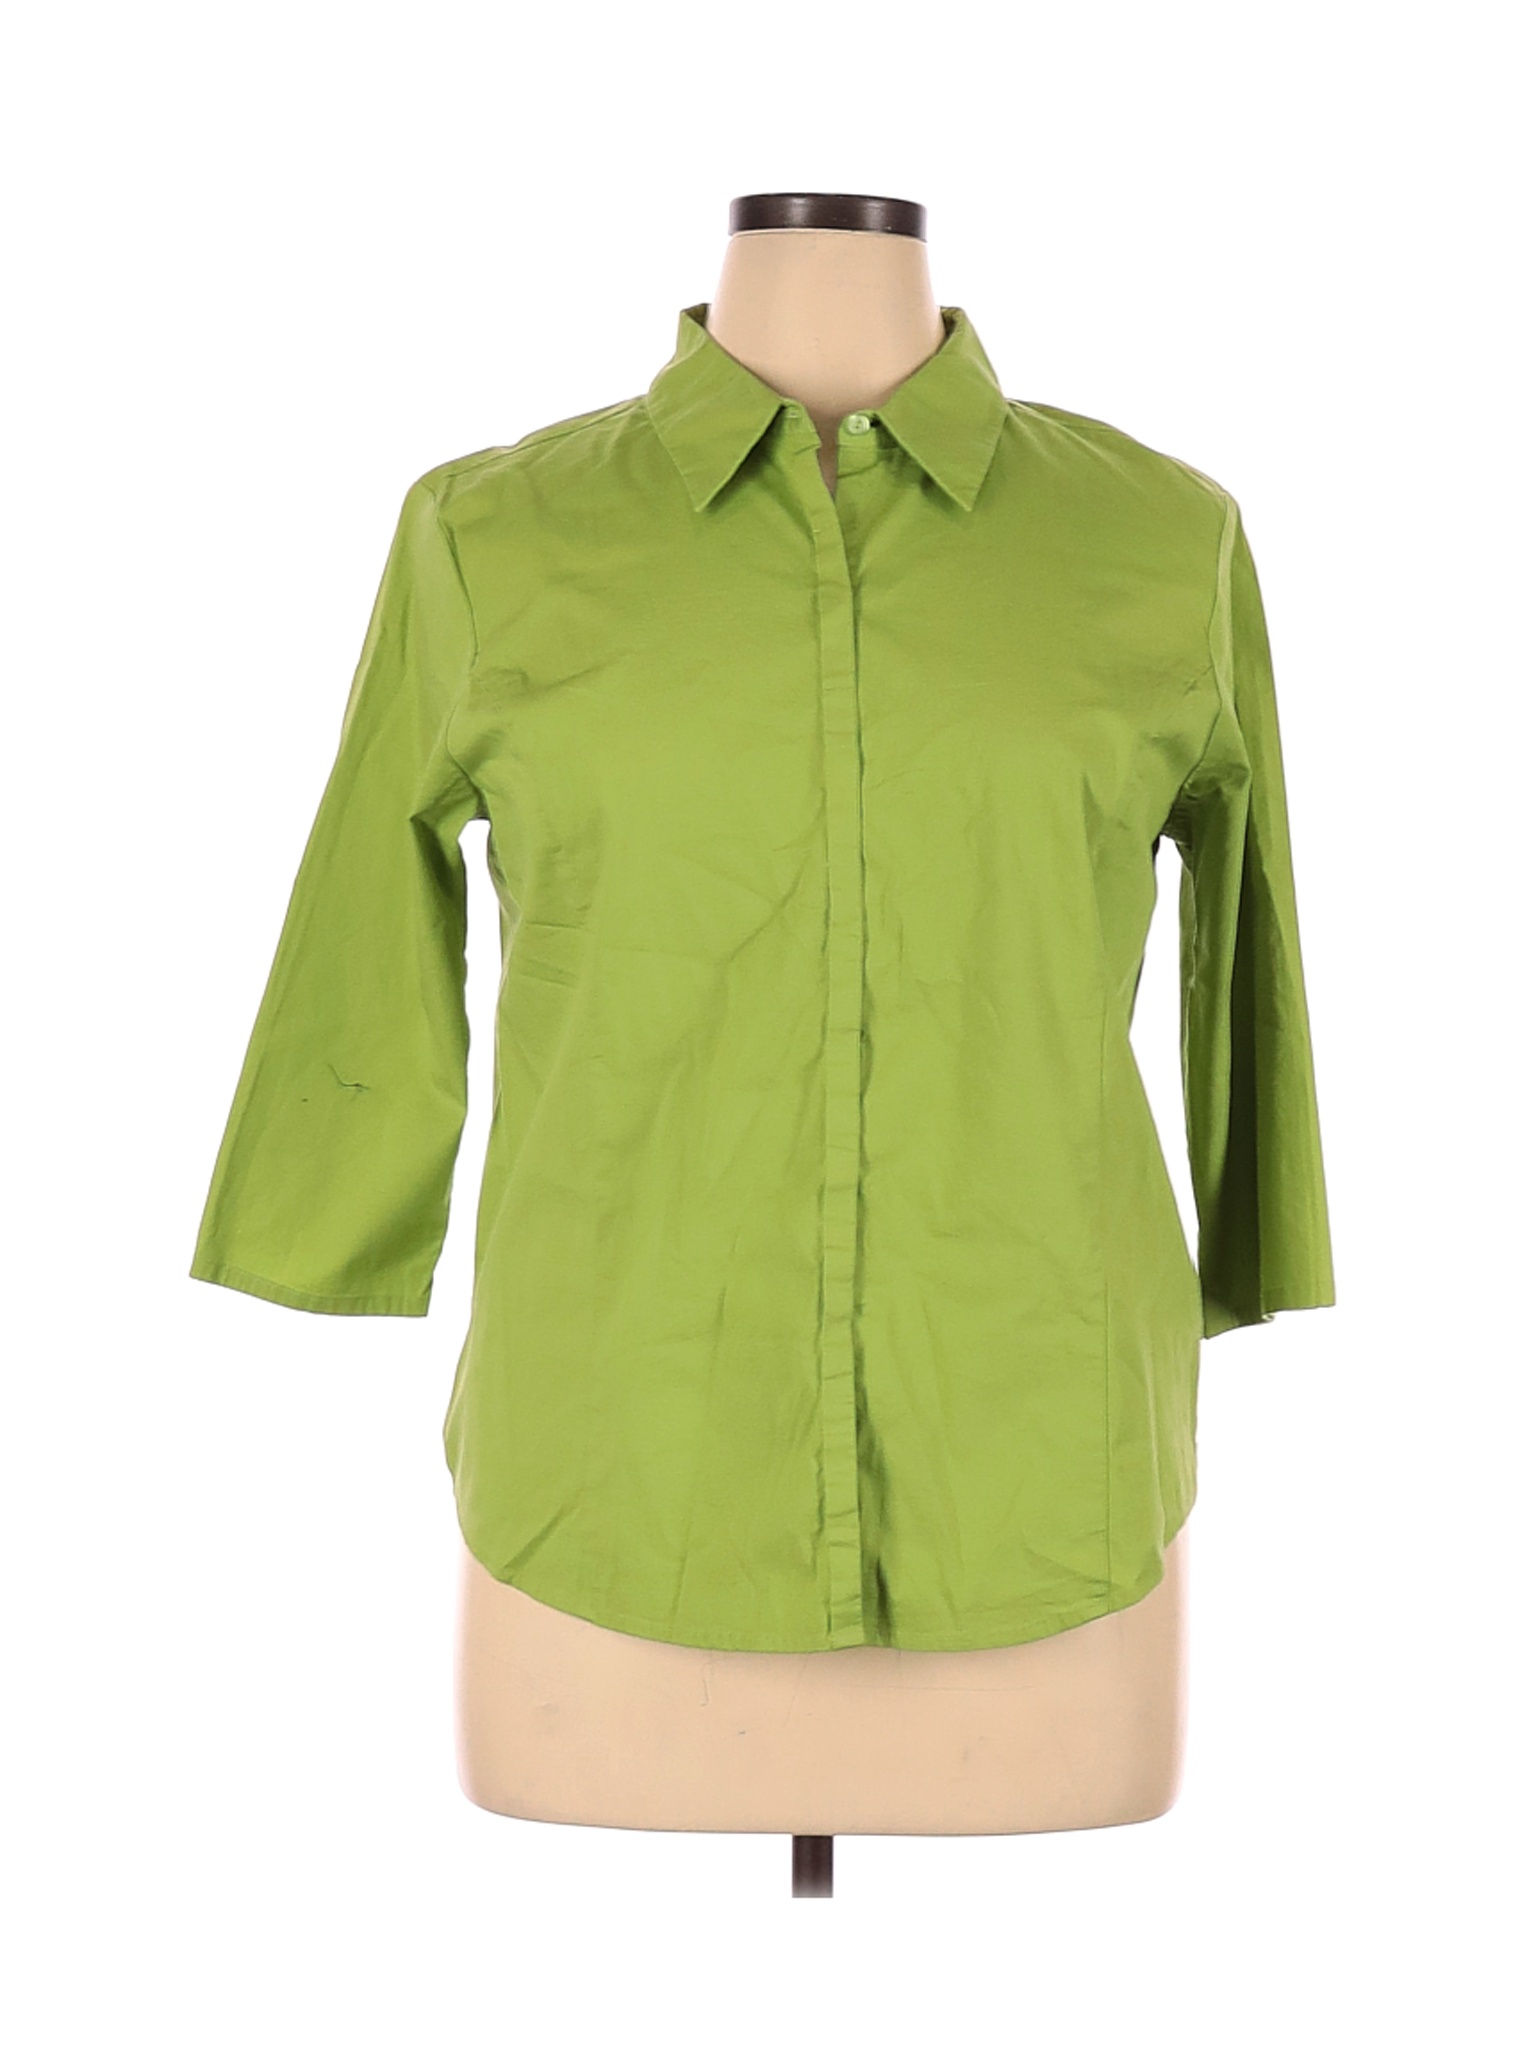 Assorted Brands Women Green Long Sleeve Button-Down Shirt XL | eBay